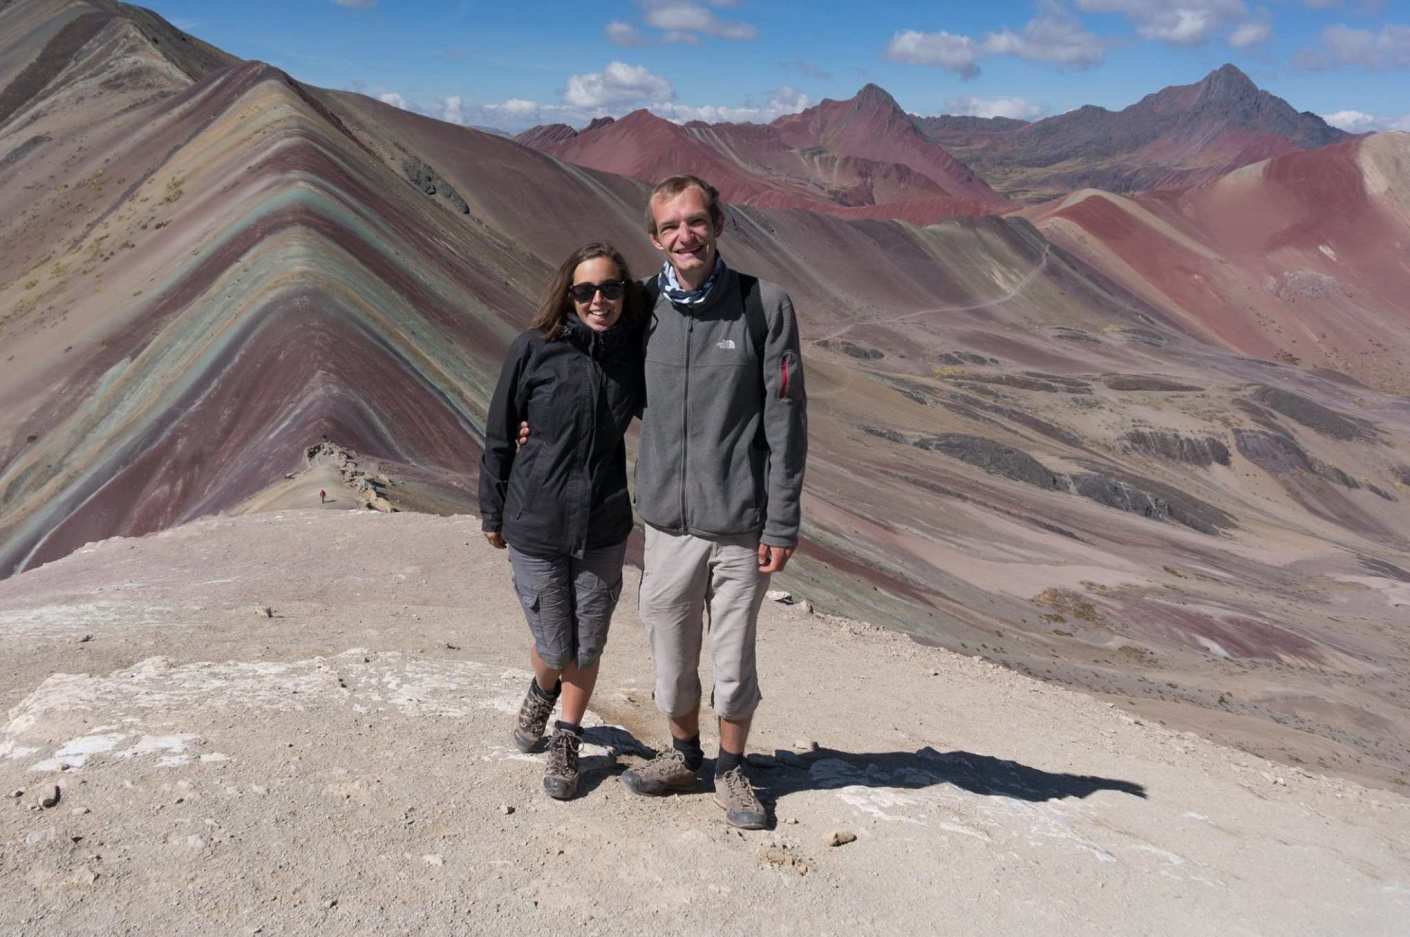 Bardzo duży wyjazd do Peru - pierwszy raz w Ameryce Południowej